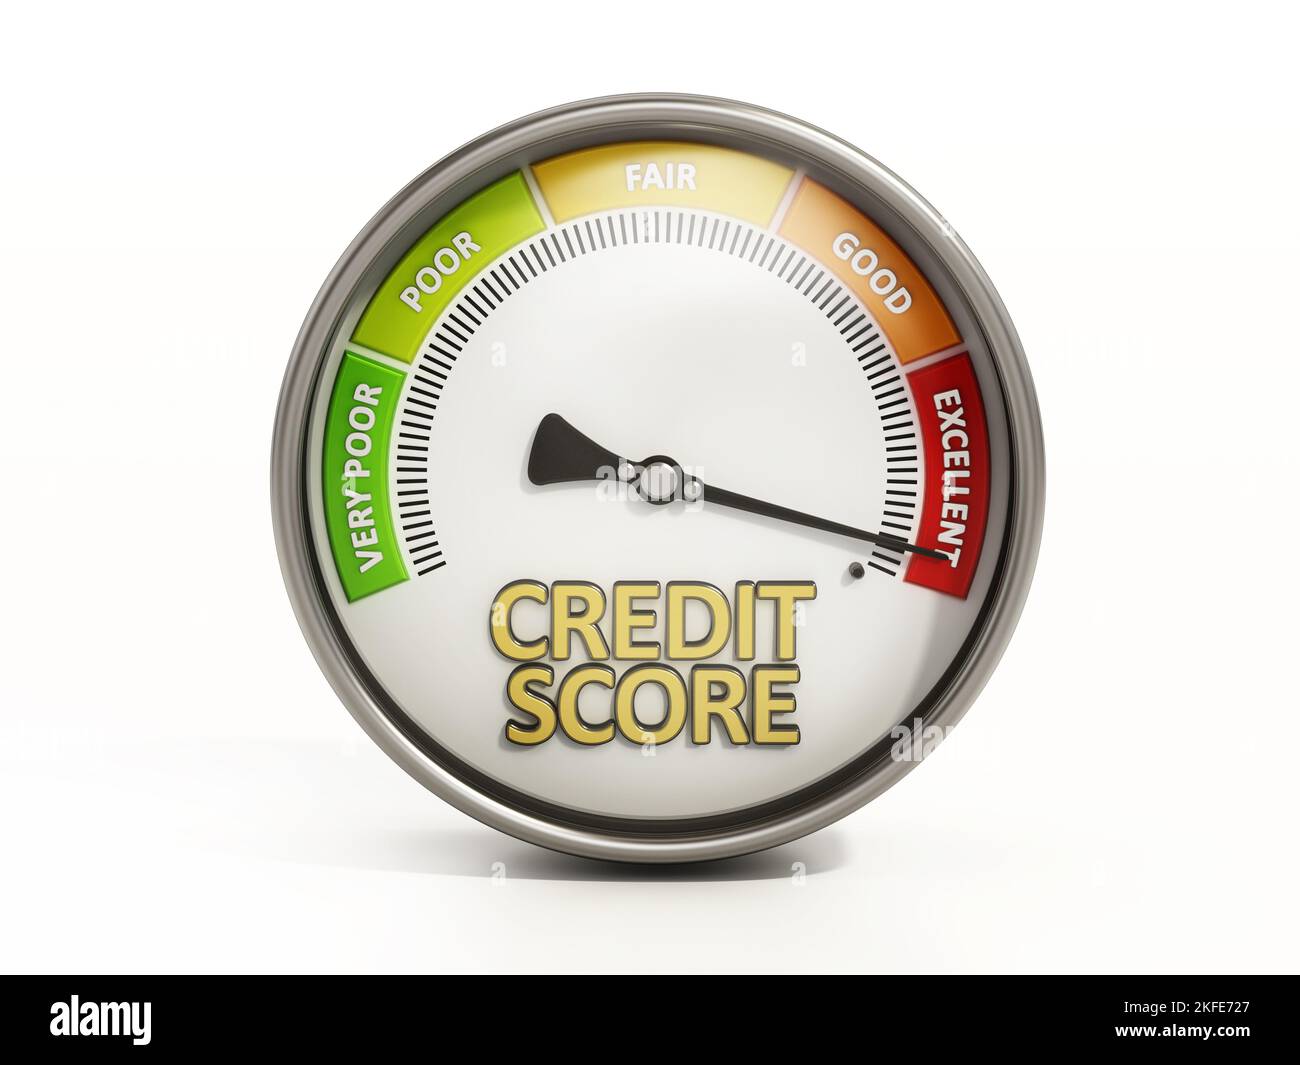 Medidor de puntuación de crédito, calificación de escala Información de crédito de muy pobre a excelente. El dial indica un buen historial de crédito. Ilustración 3D. Foto de stock